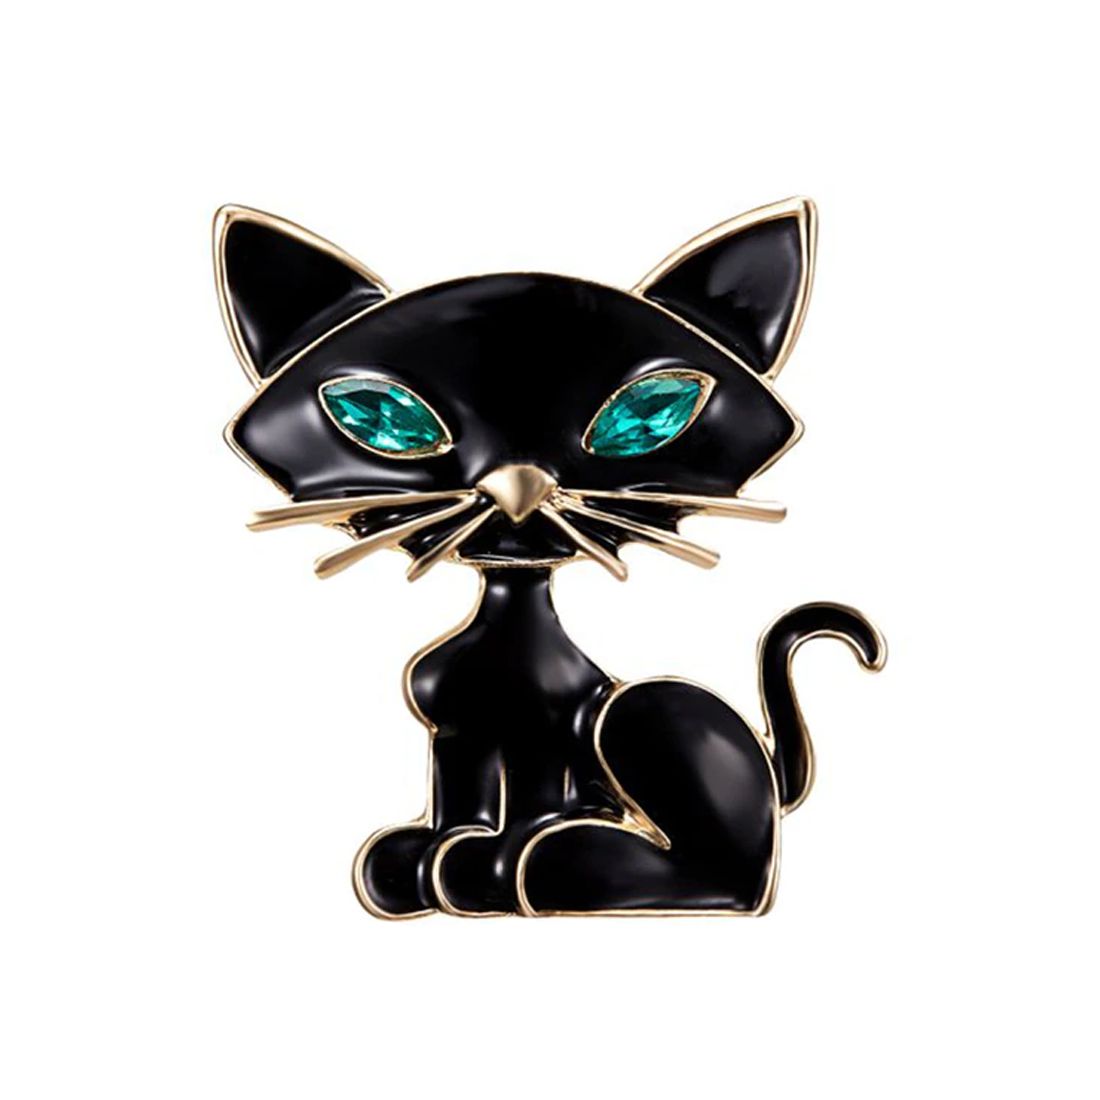 Broche chat noir aux yeux bleus - Strass et émaillée